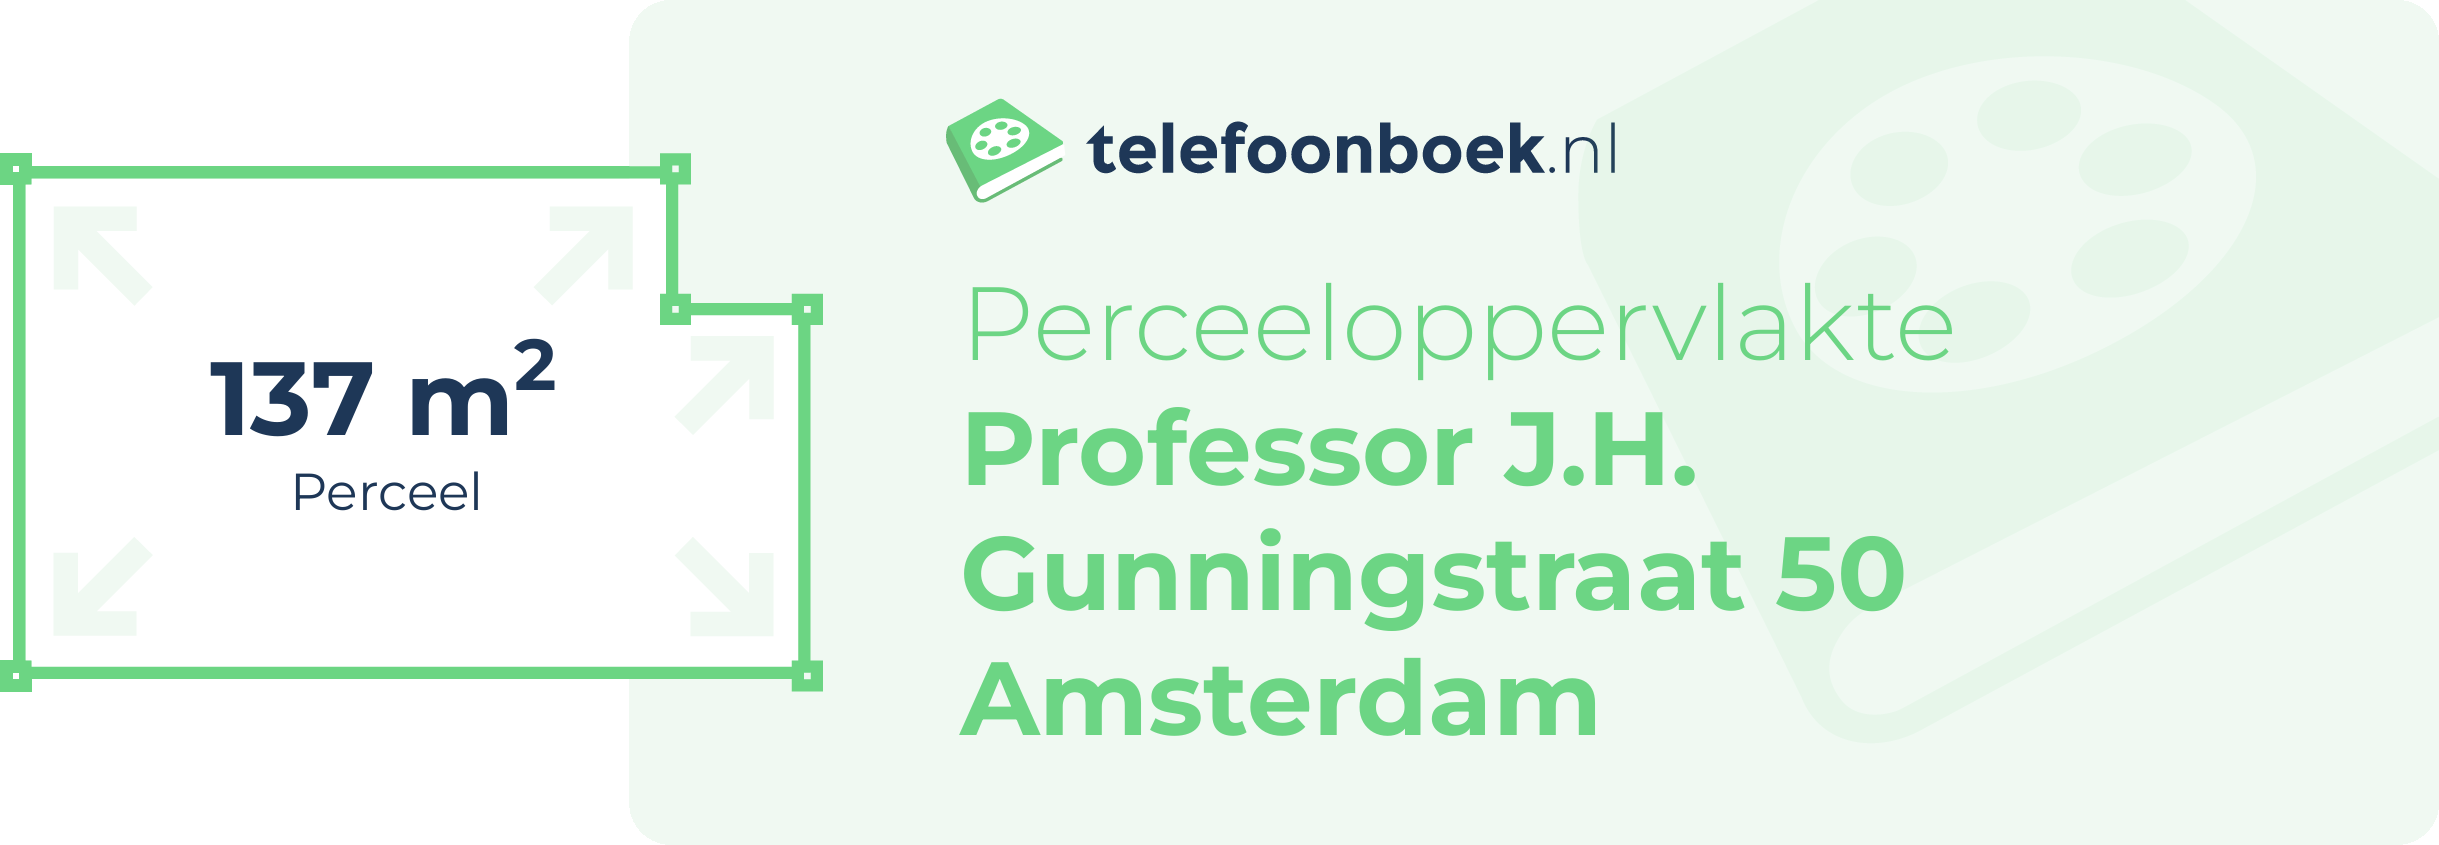 Perceeloppervlakte Professor J.H. Gunningstraat 50 Amsterdam